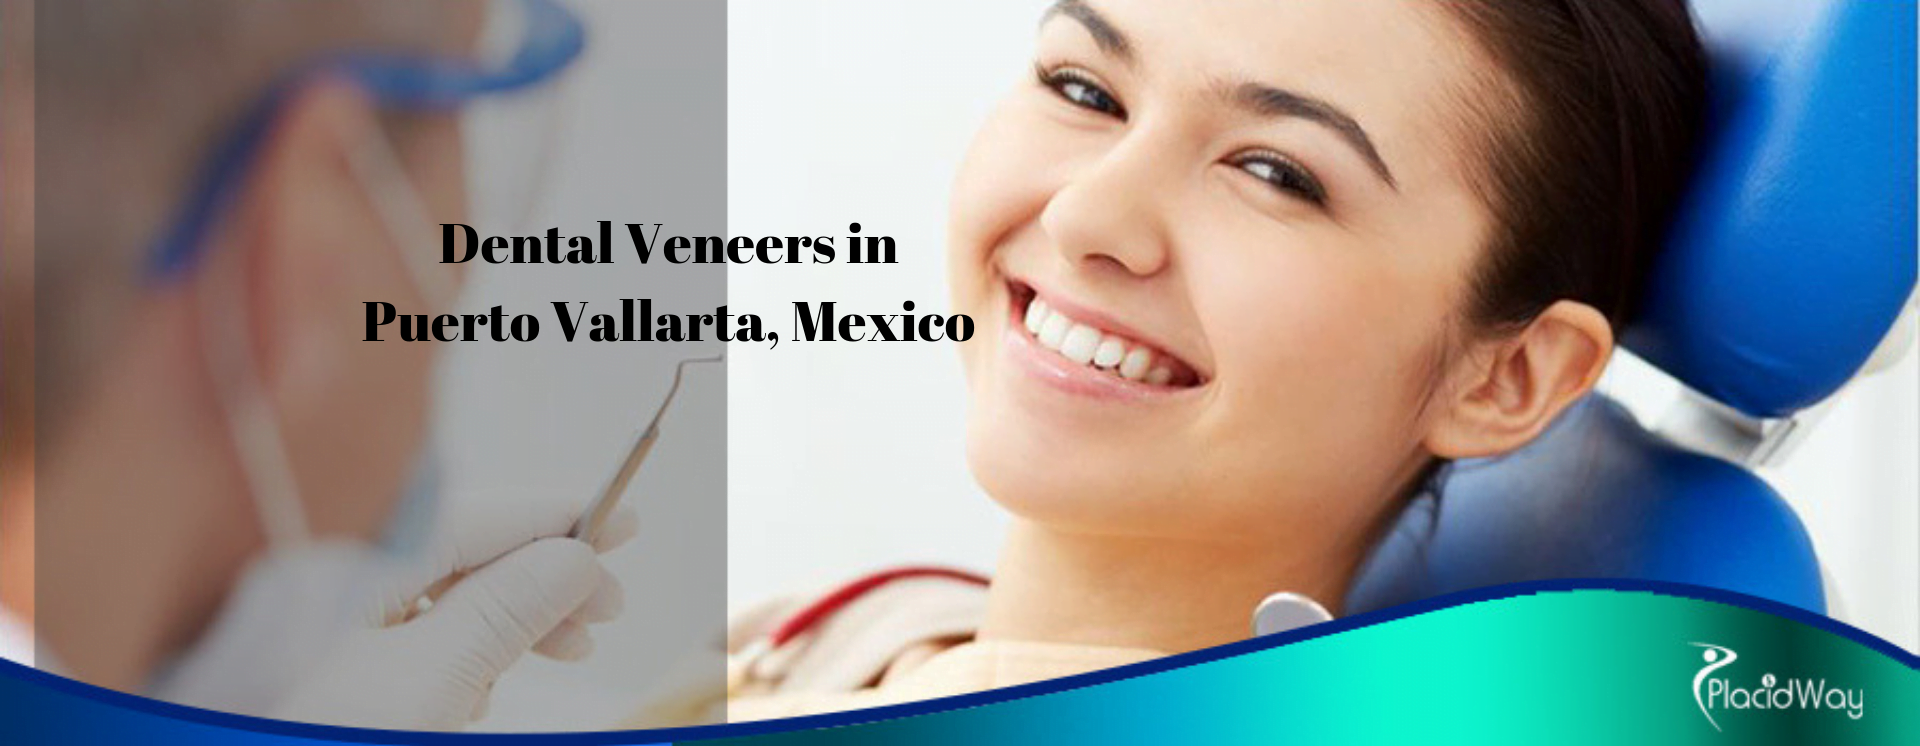 Dental-Veneers-in-Puerto-Vallarta-Mexico